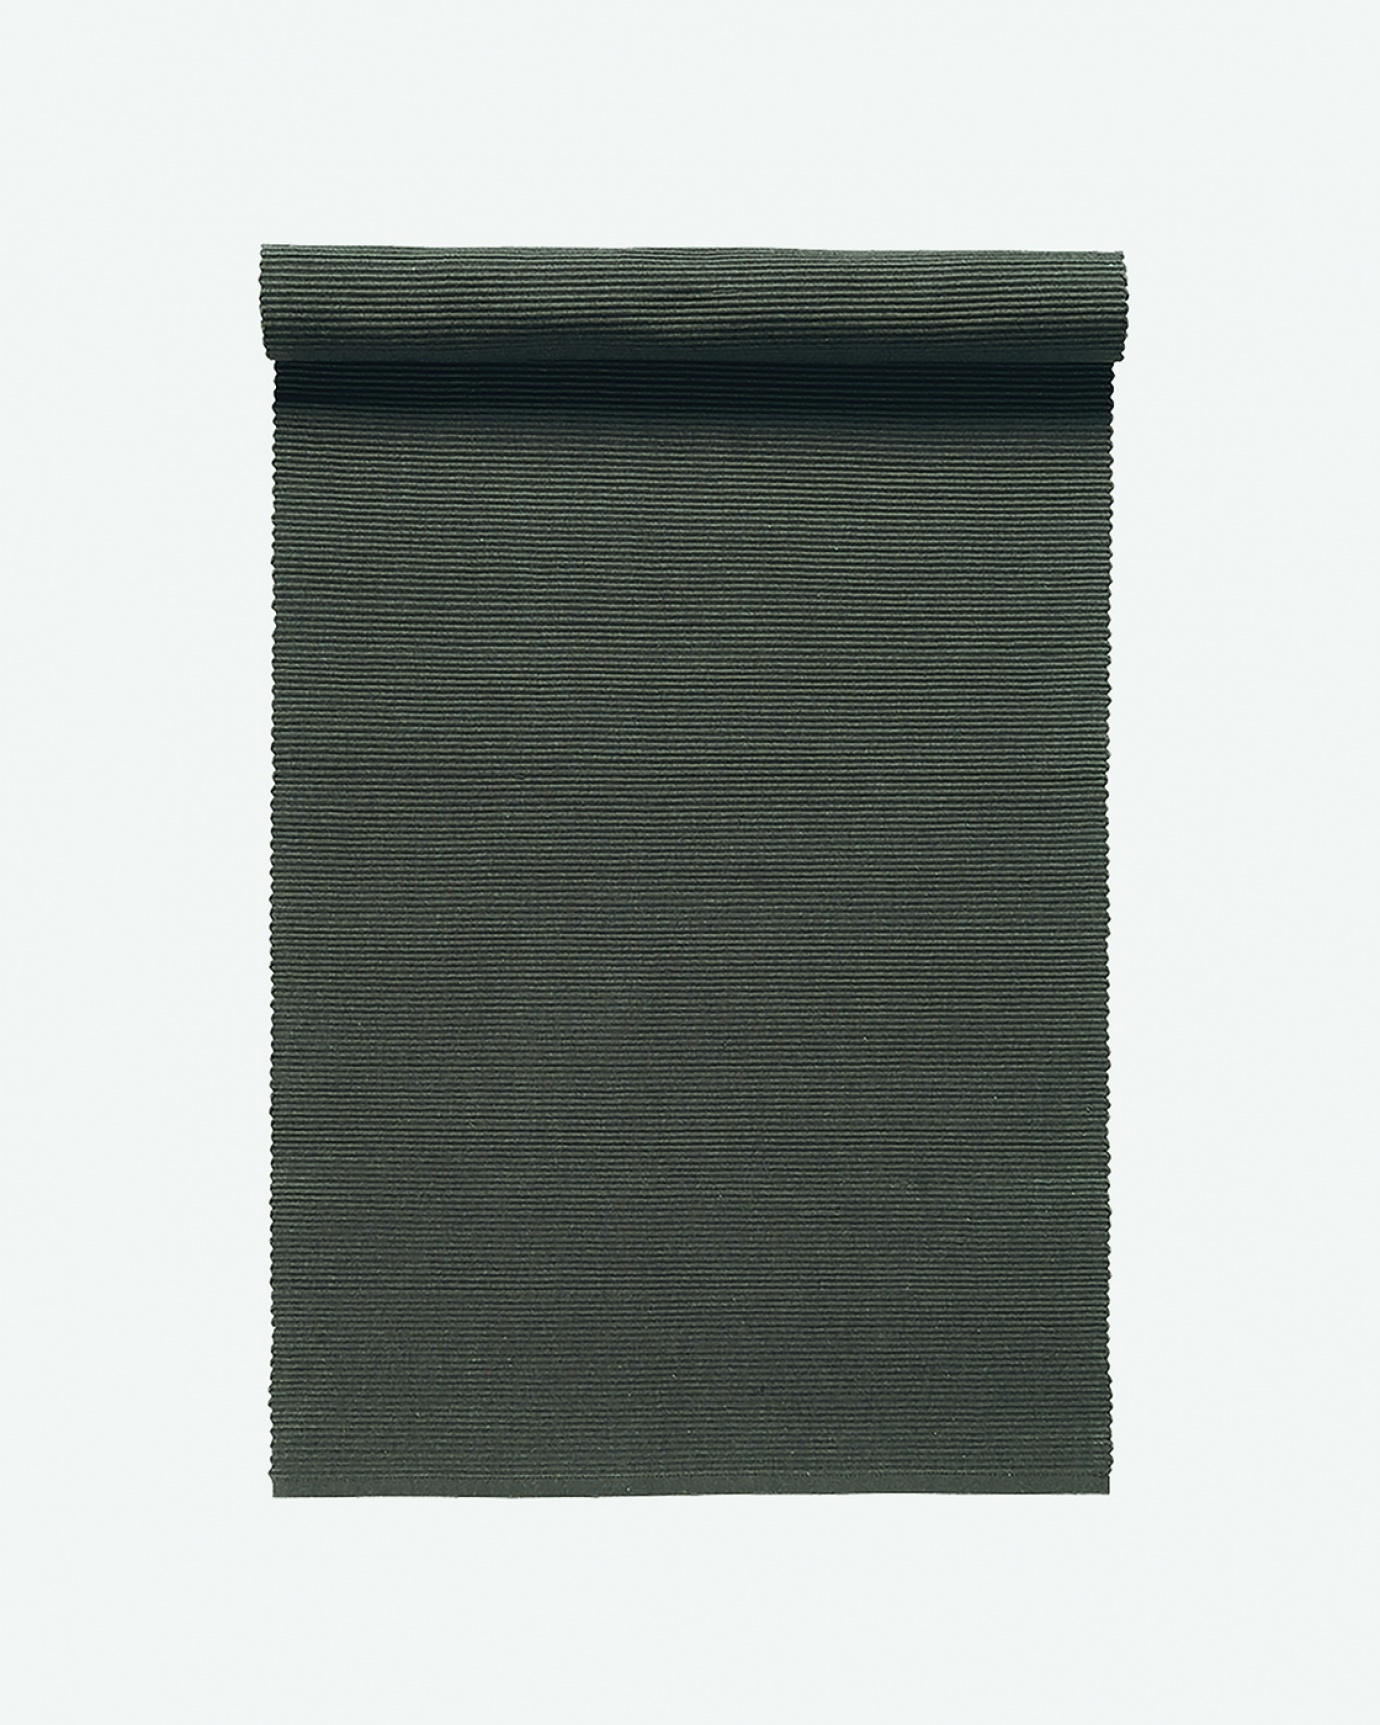 Produktbild büffelbraun UNI Tischläufer aus weicher Baumwolle in Rippenqualität von LINUM DESIGN. Größe 45x150 cm.